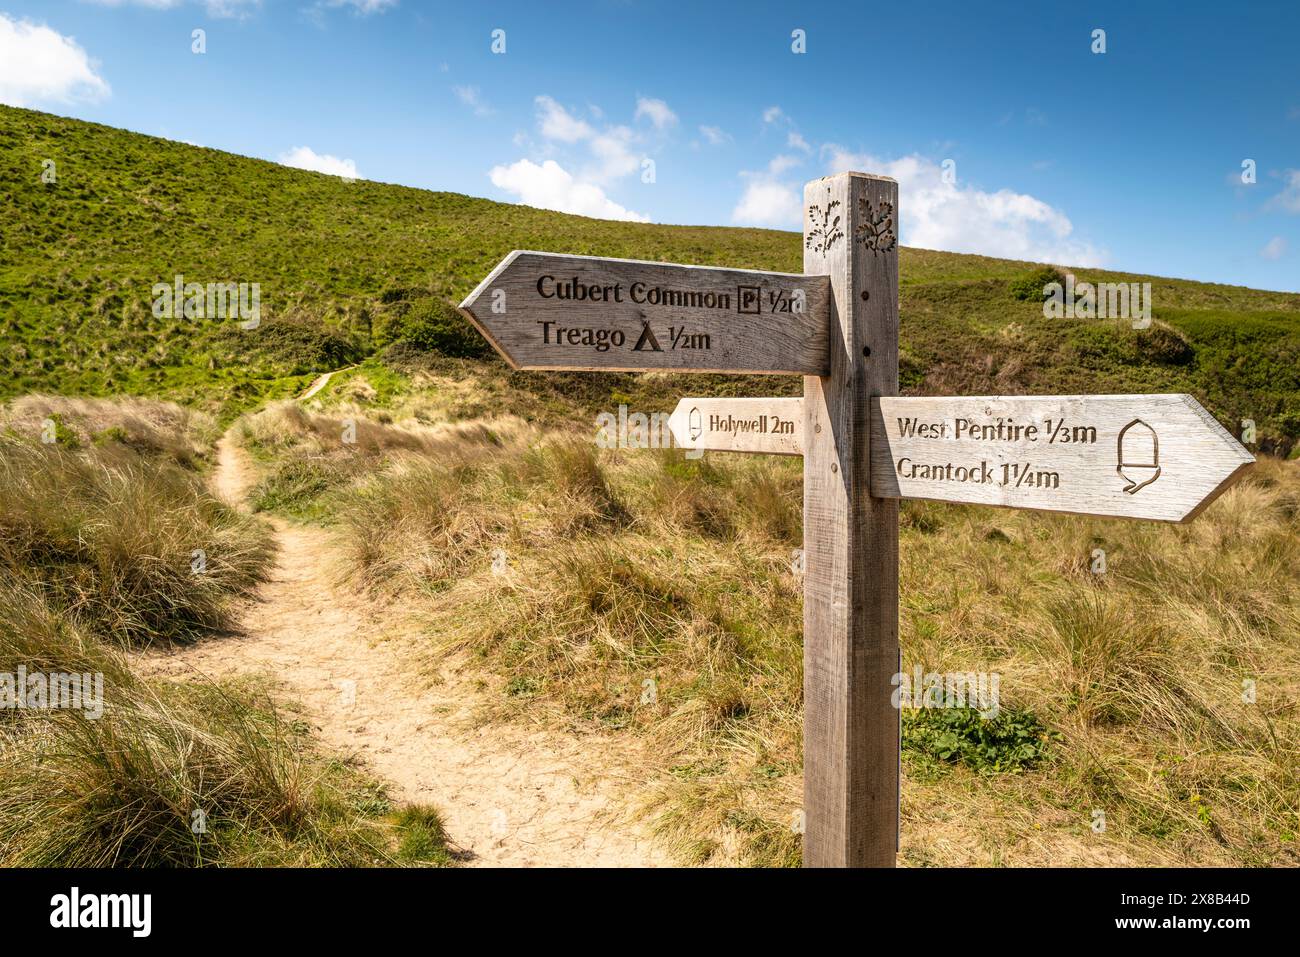 Un cartello in legno sul sentiero della costa sud-occidentale che fornisce indicazioni per vari luoghi sulla costa di Newquay in Cornovaglia nel Regno Unito. Foto Stock